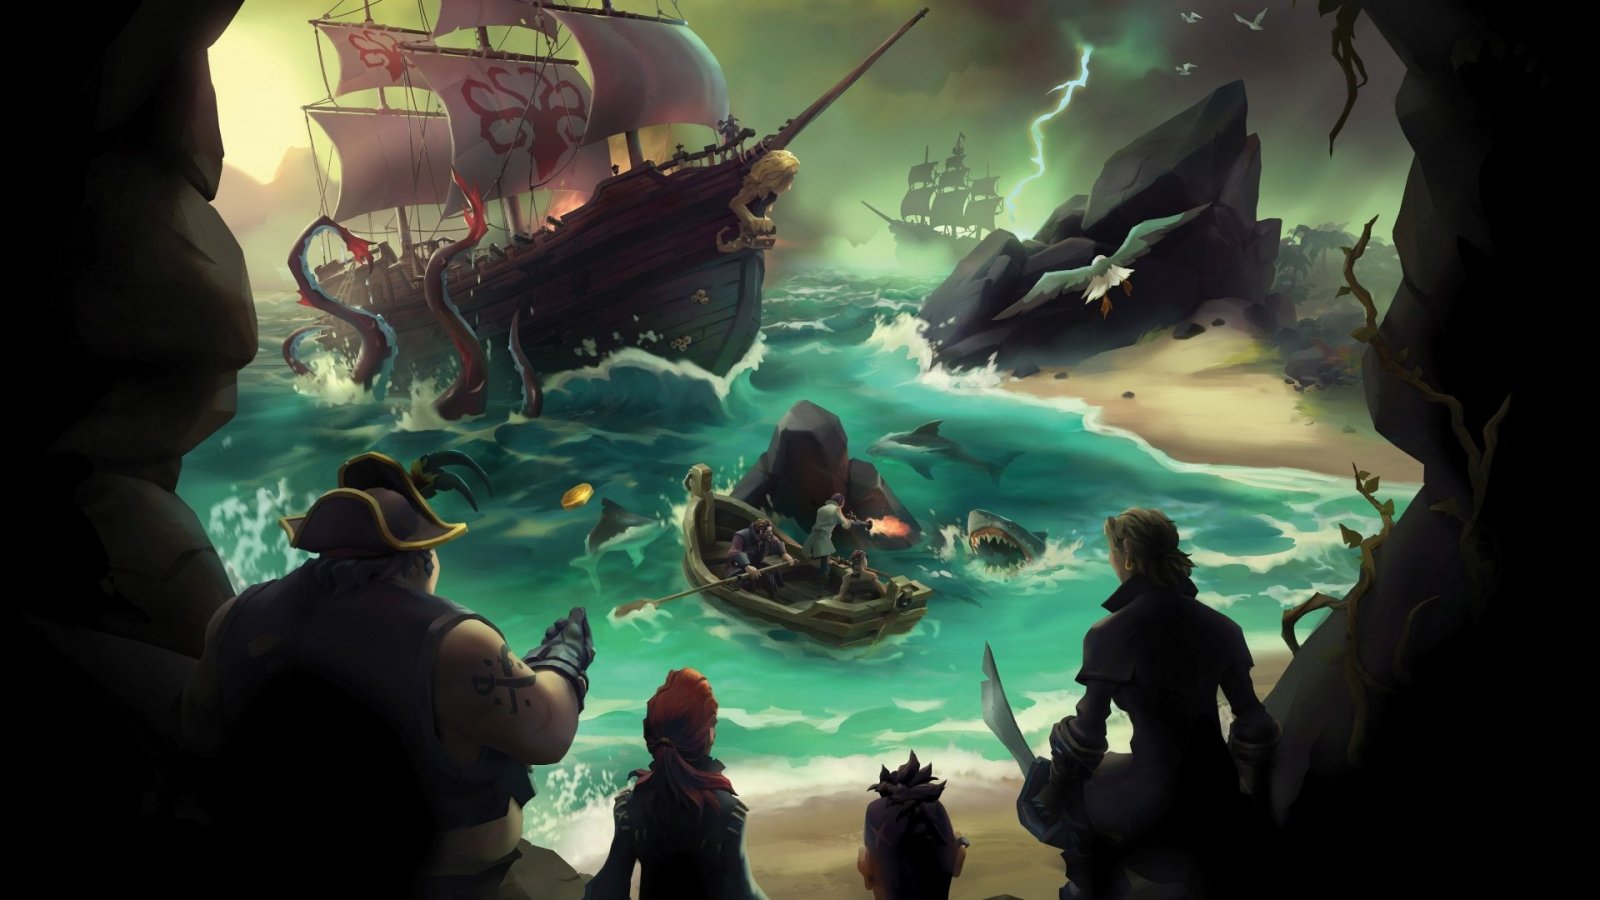 Sea of Thieves su PS5: chi trova un live service, trova un tesoro... dei pirati